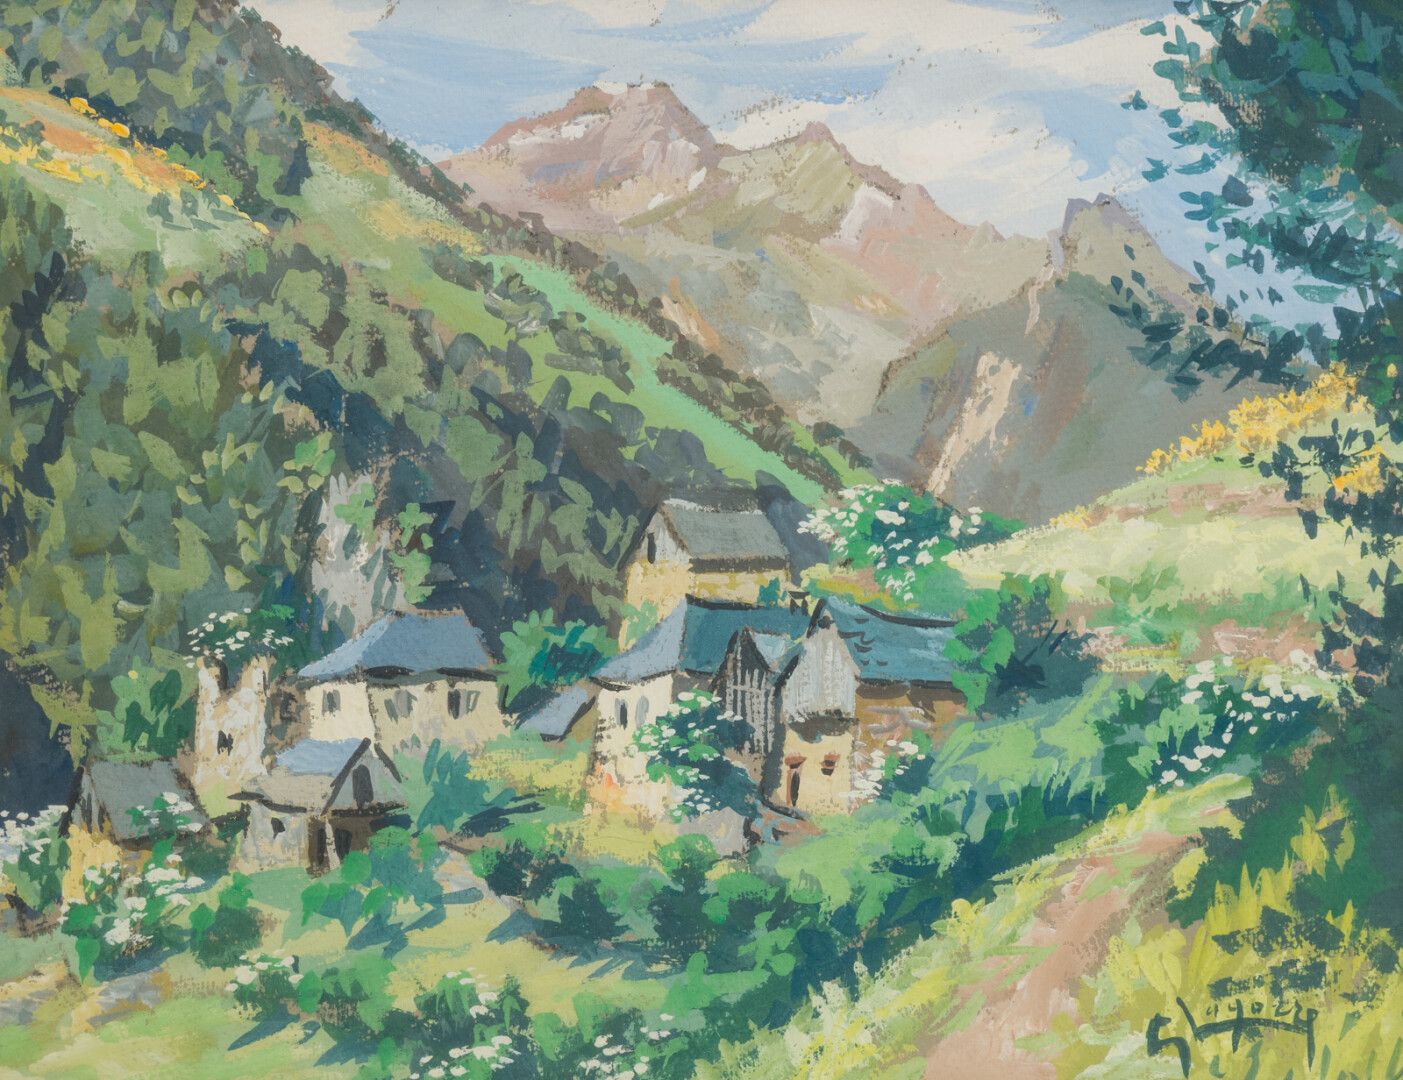 Null 勒内-加斯东-拉戈尔(1913-2004)

比利牛斯山脉的哈姆雷特

纸上水粉画，右下角有签名

24 x 31厘米。